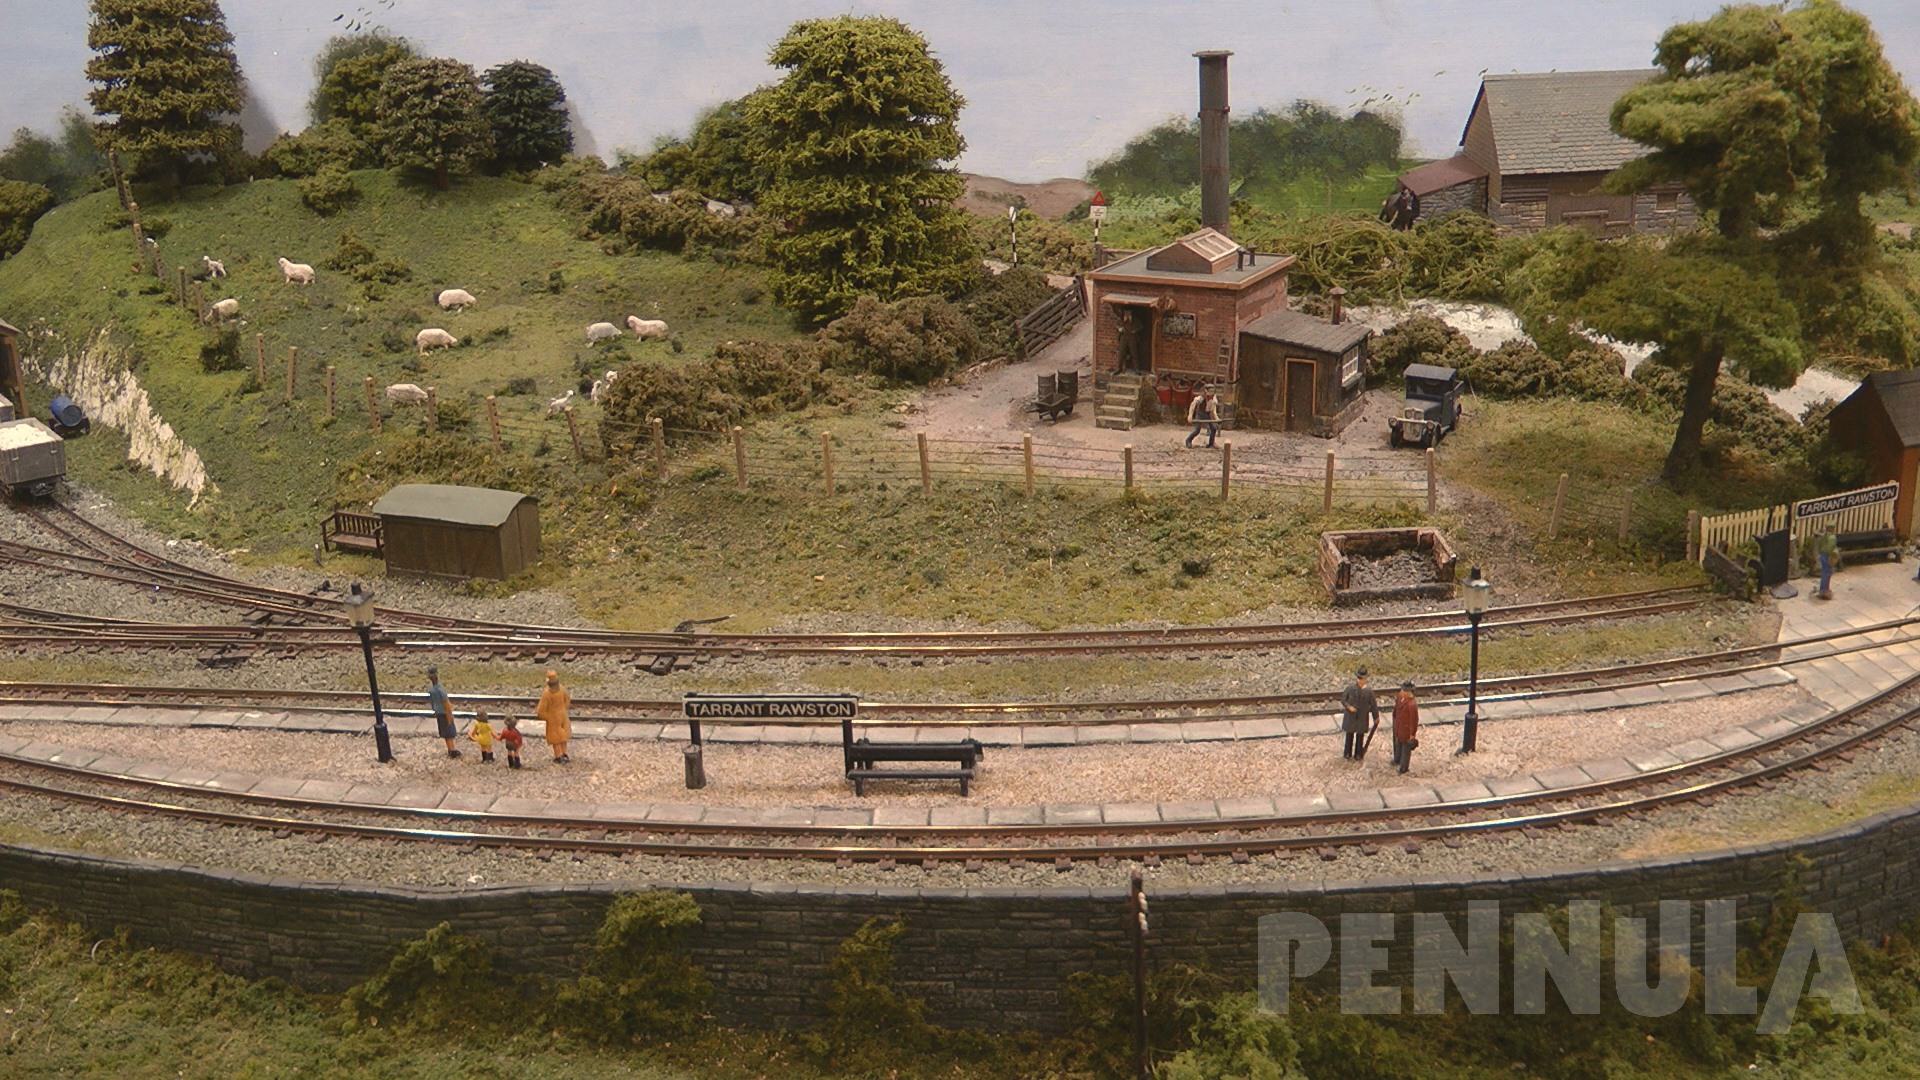 Dampfloks und Dampfzüge: Eine wunderschöne Schmalspur Modellbahn-Anlage aus England